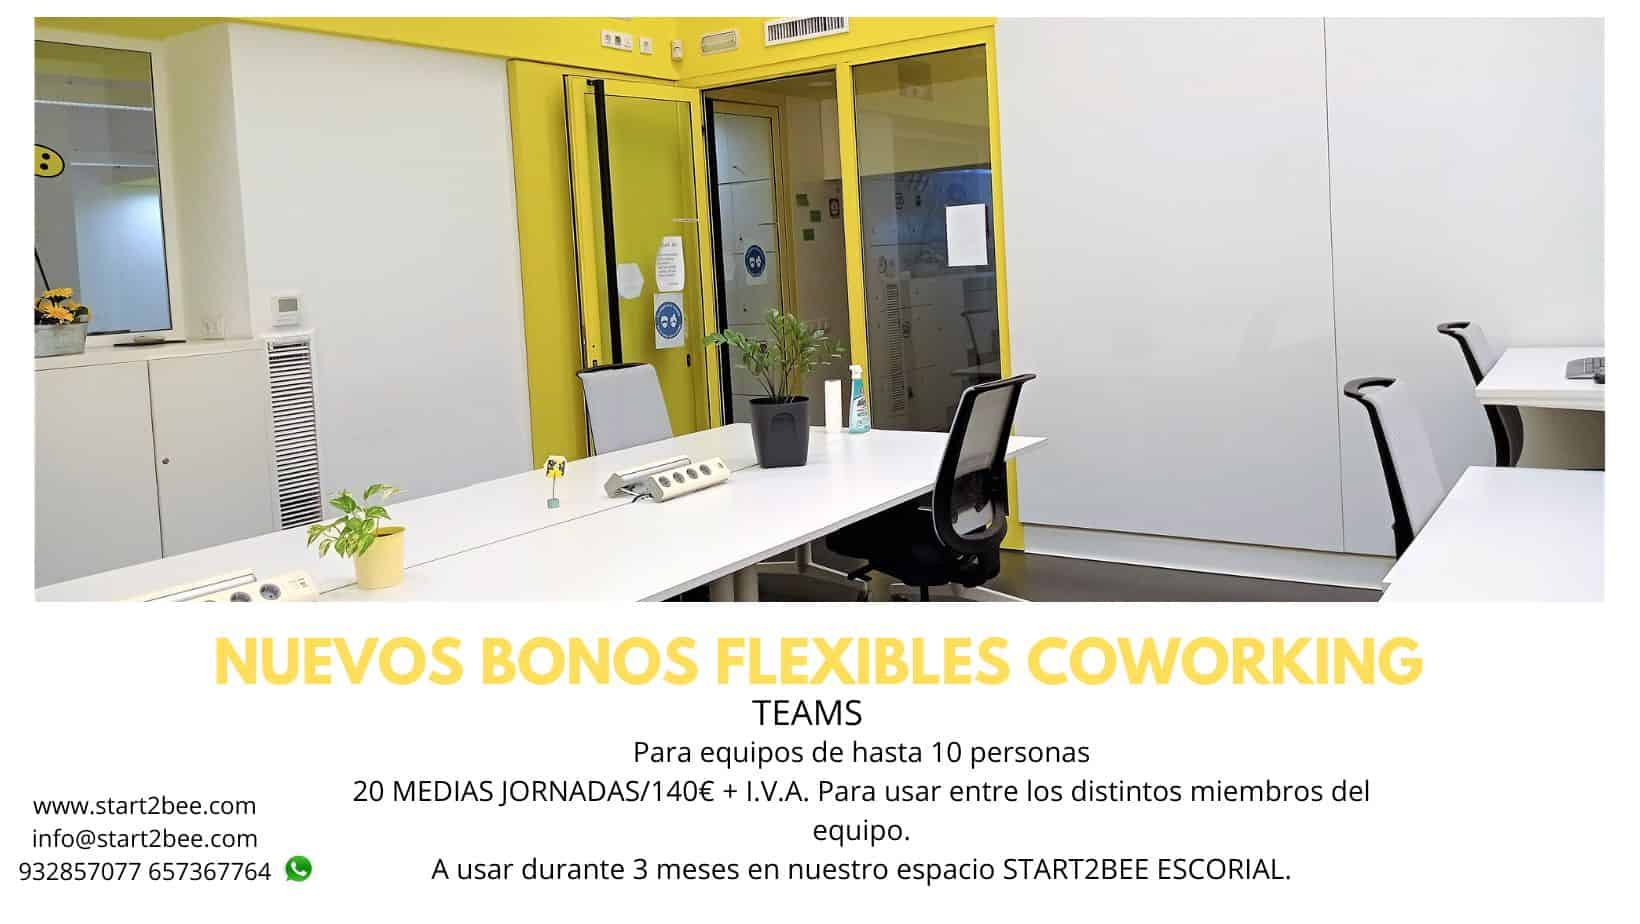 Bonos flexibles coworking teams